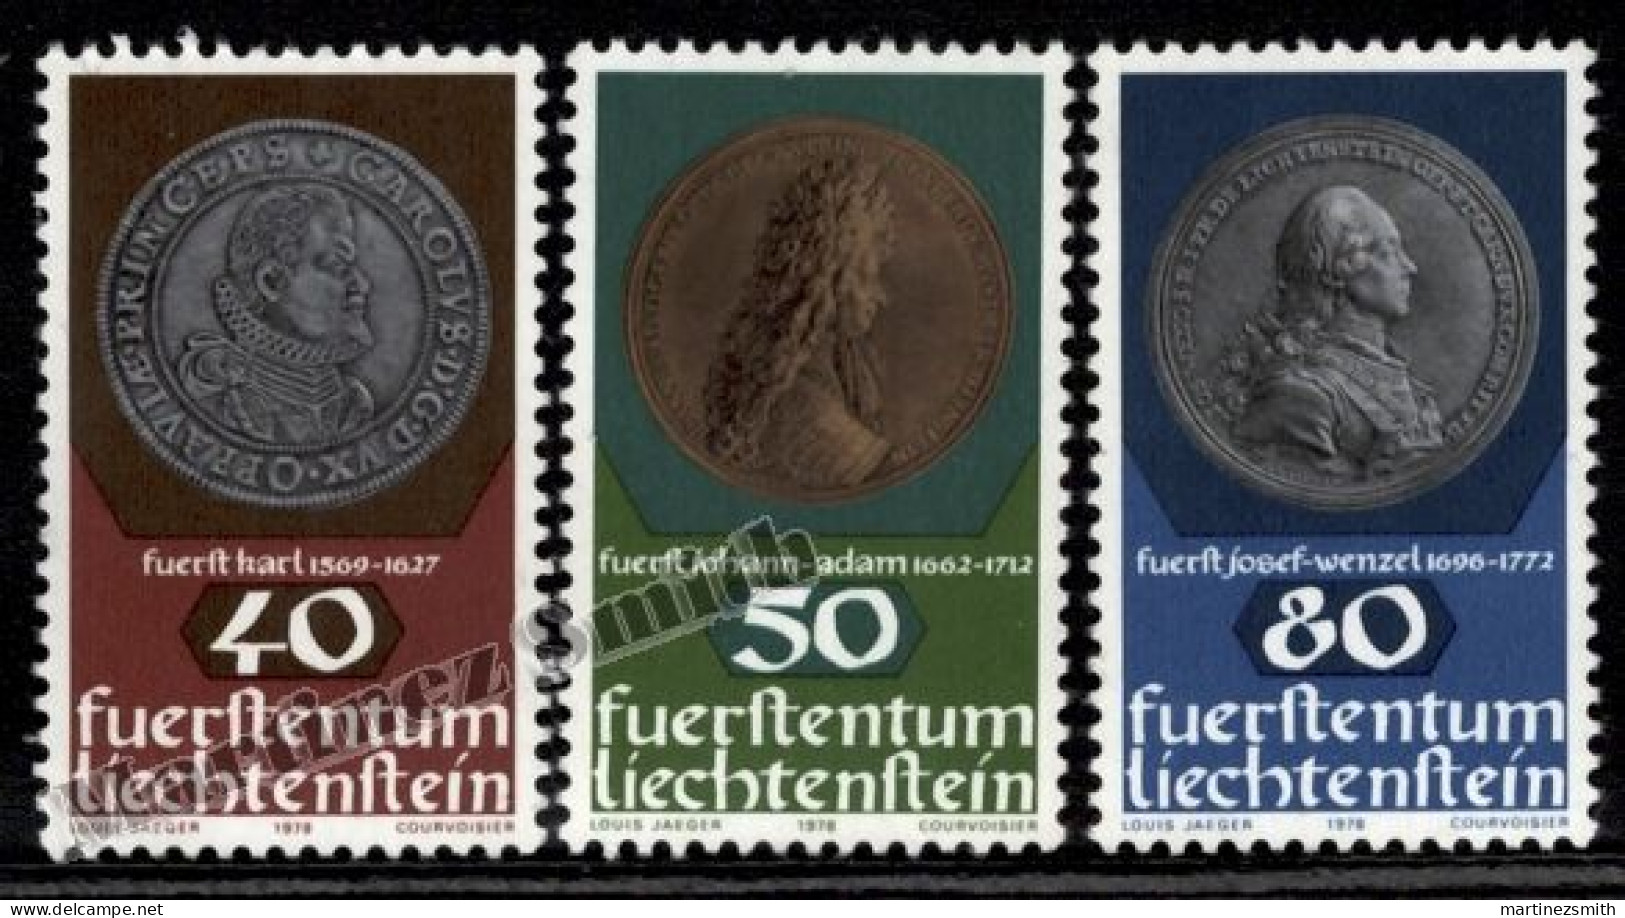 Liechtenstein 1978 Yvert 651-53, Coins & Medals (II), Coins On Stamps - MNH - Neufs